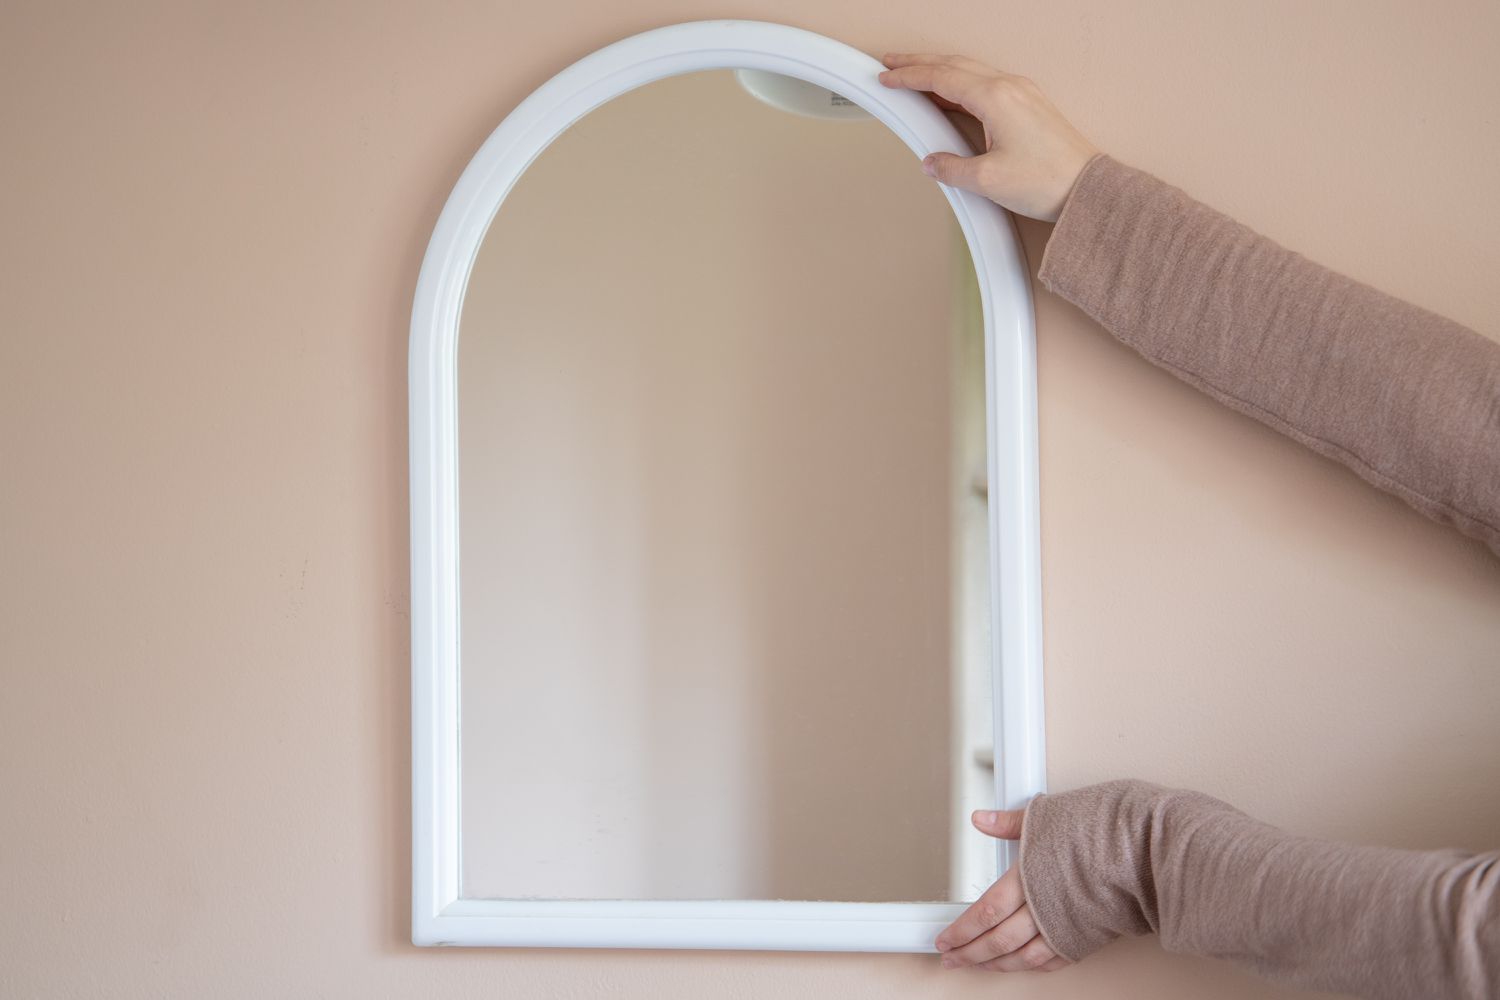 Espelho com moldura branca sendo colocado na parede